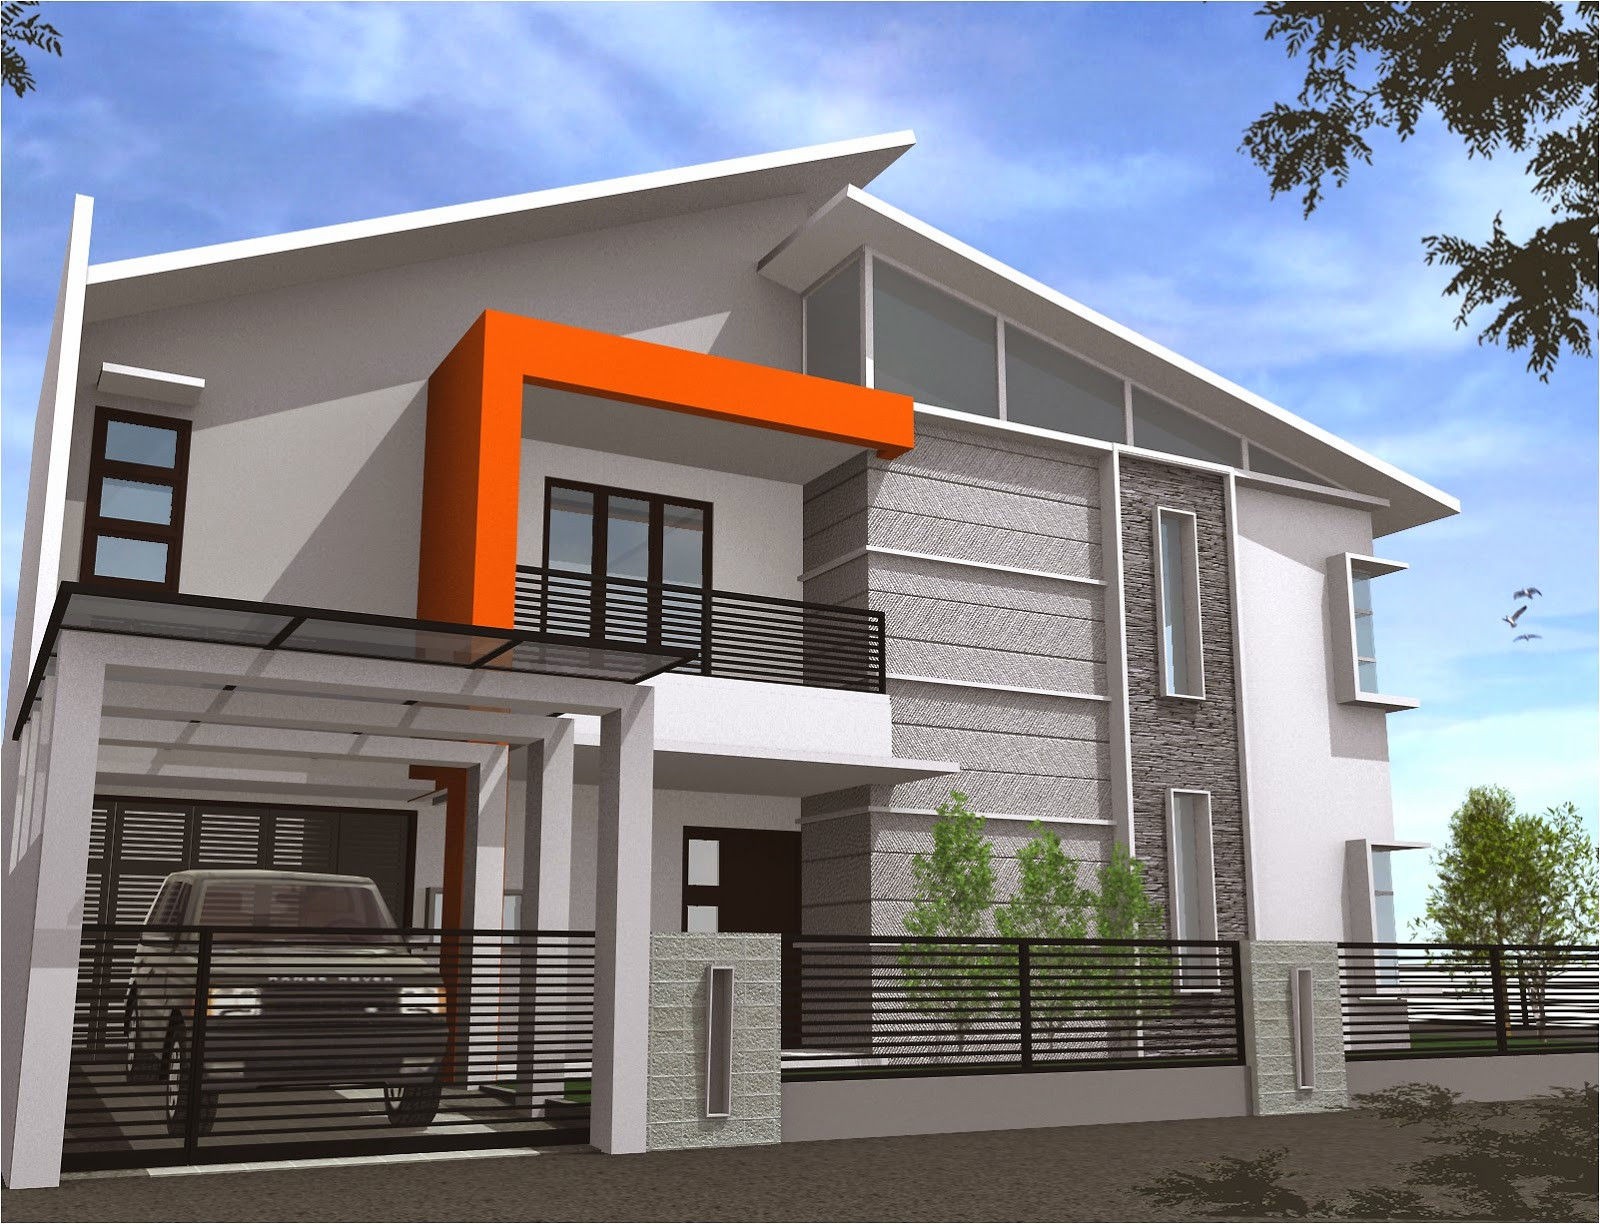 21 desain pagar minimalis untuk semua tipe rumah 2015